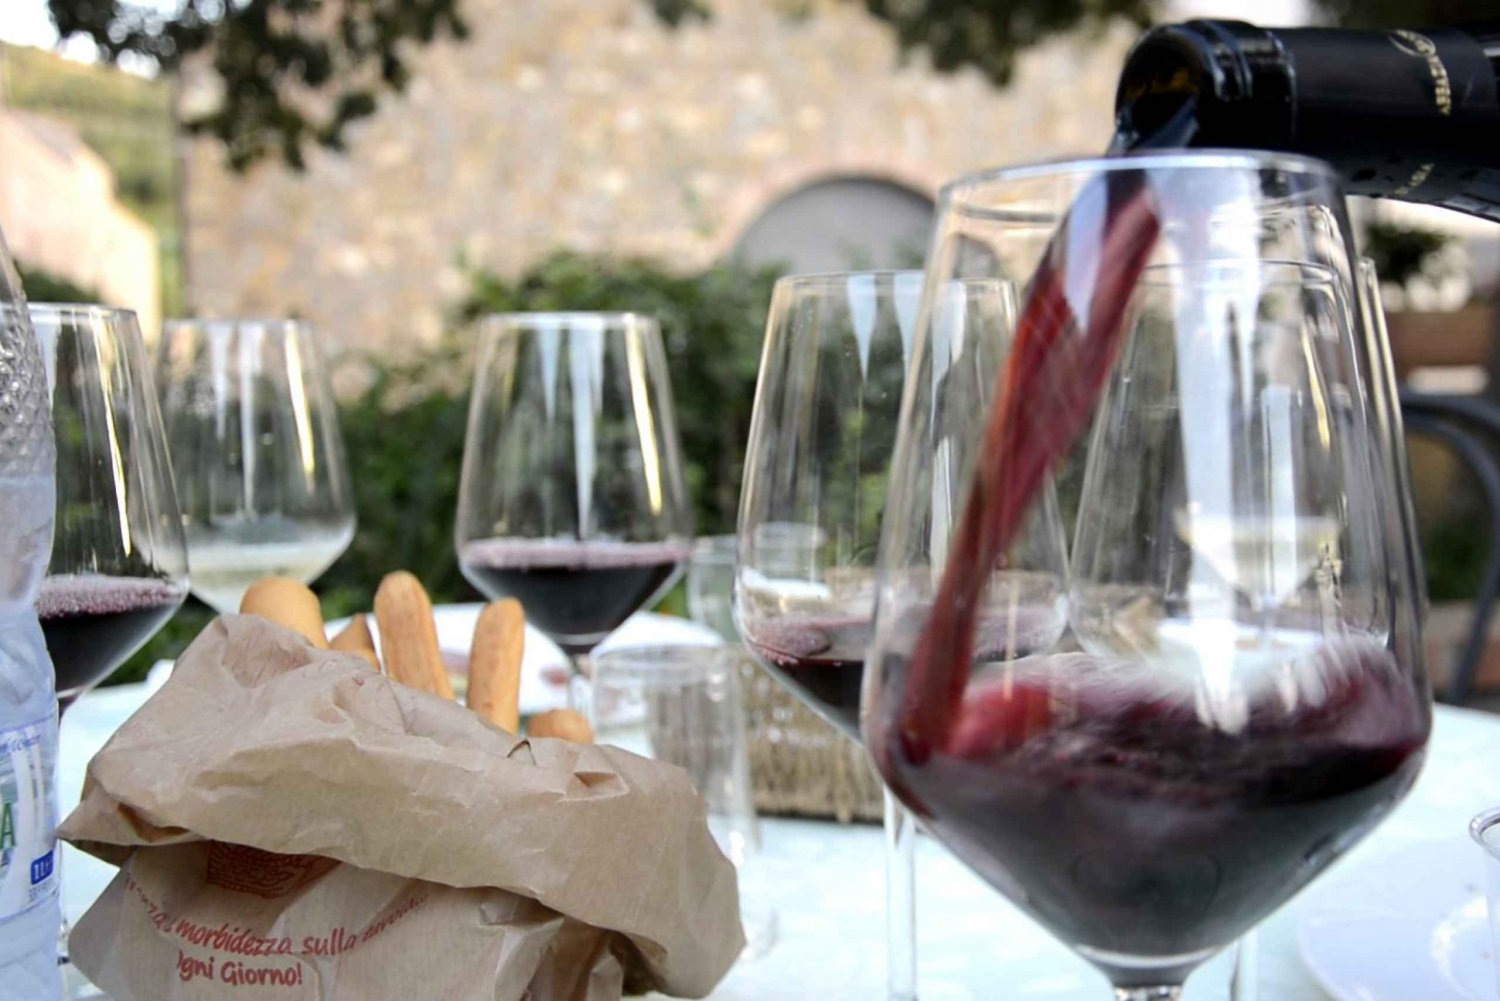 Cefalù: półdniowa degustacja wina w Castelbuono